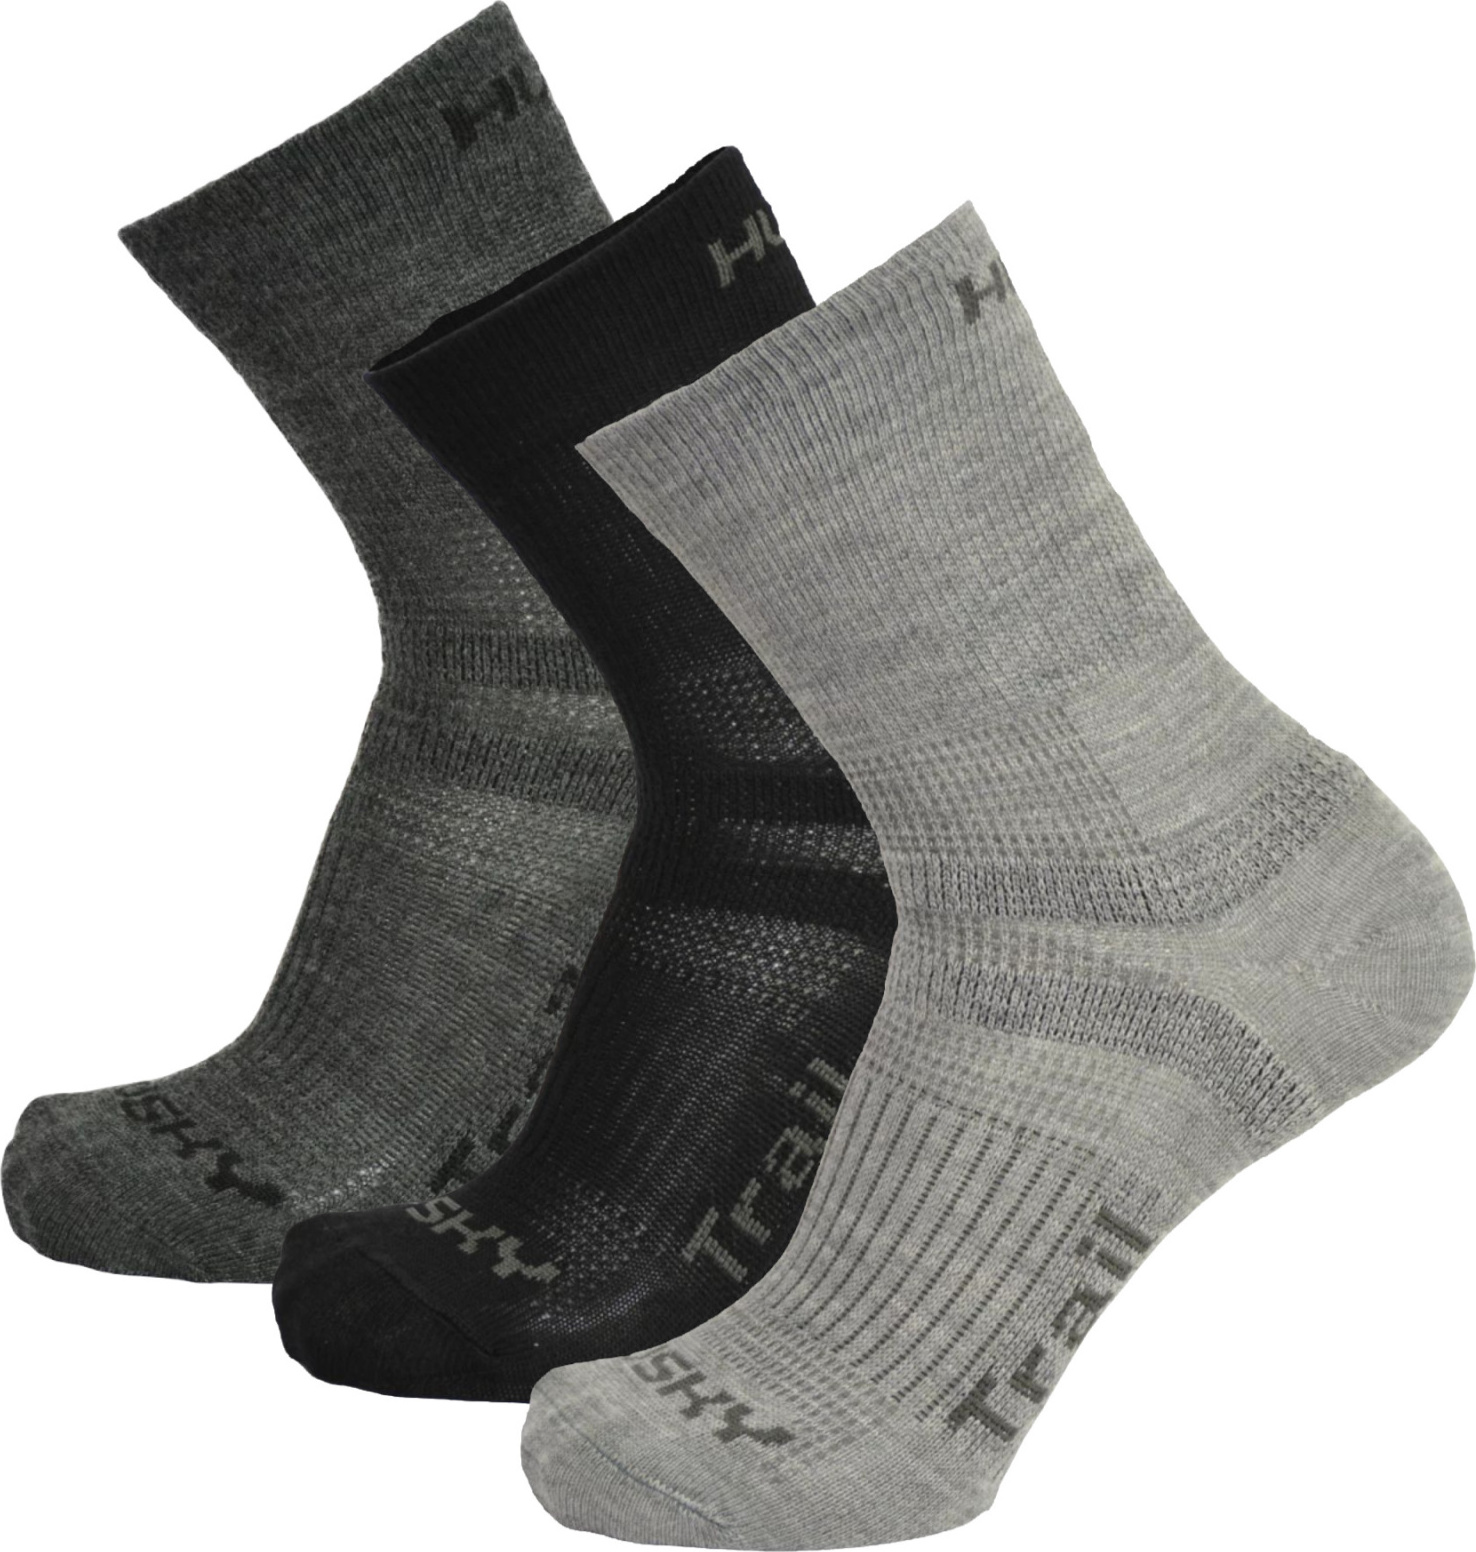 Unisex ponožky HUSKY Trail 3 páry černé/šedé Velikost: M (36-40)